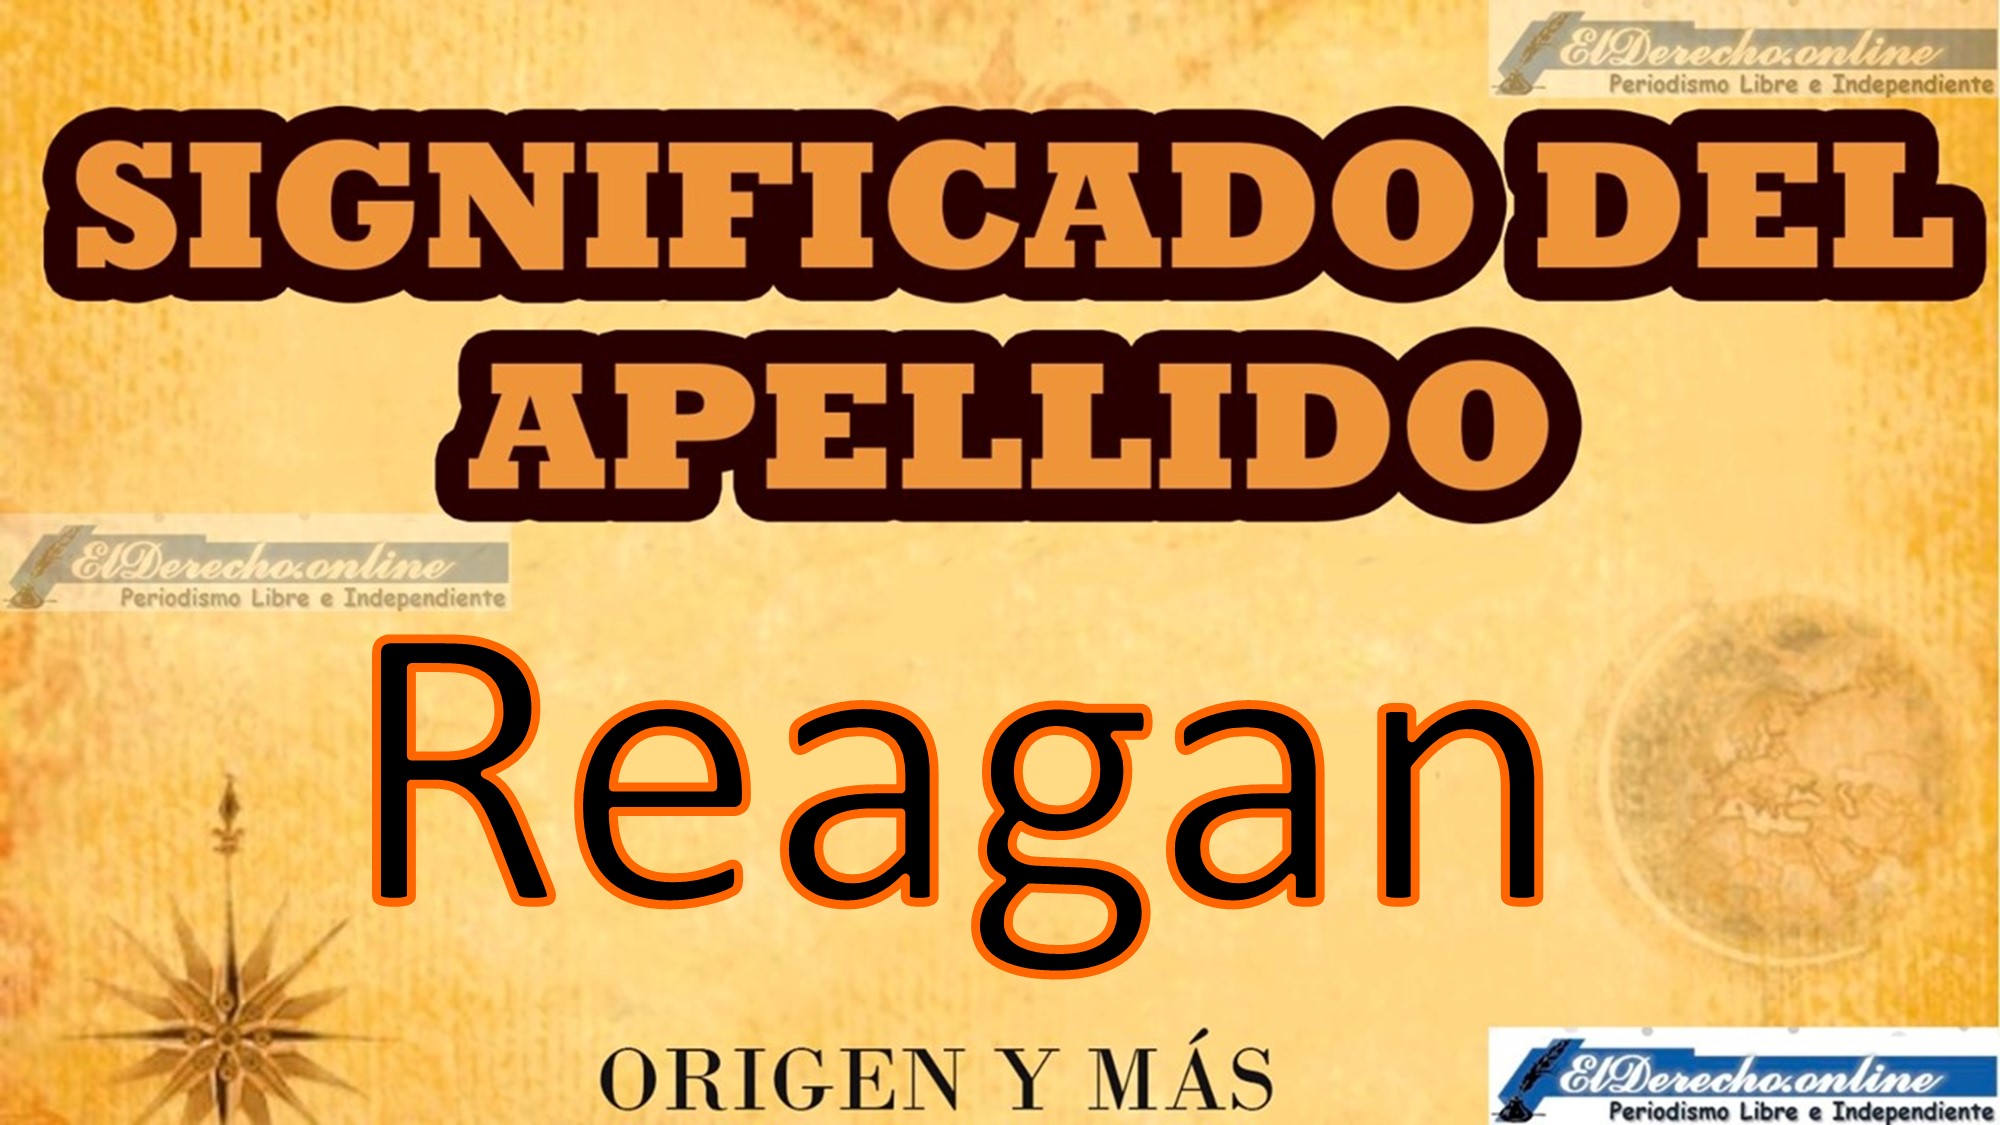 Significado del apellido Reagan, Origen y más